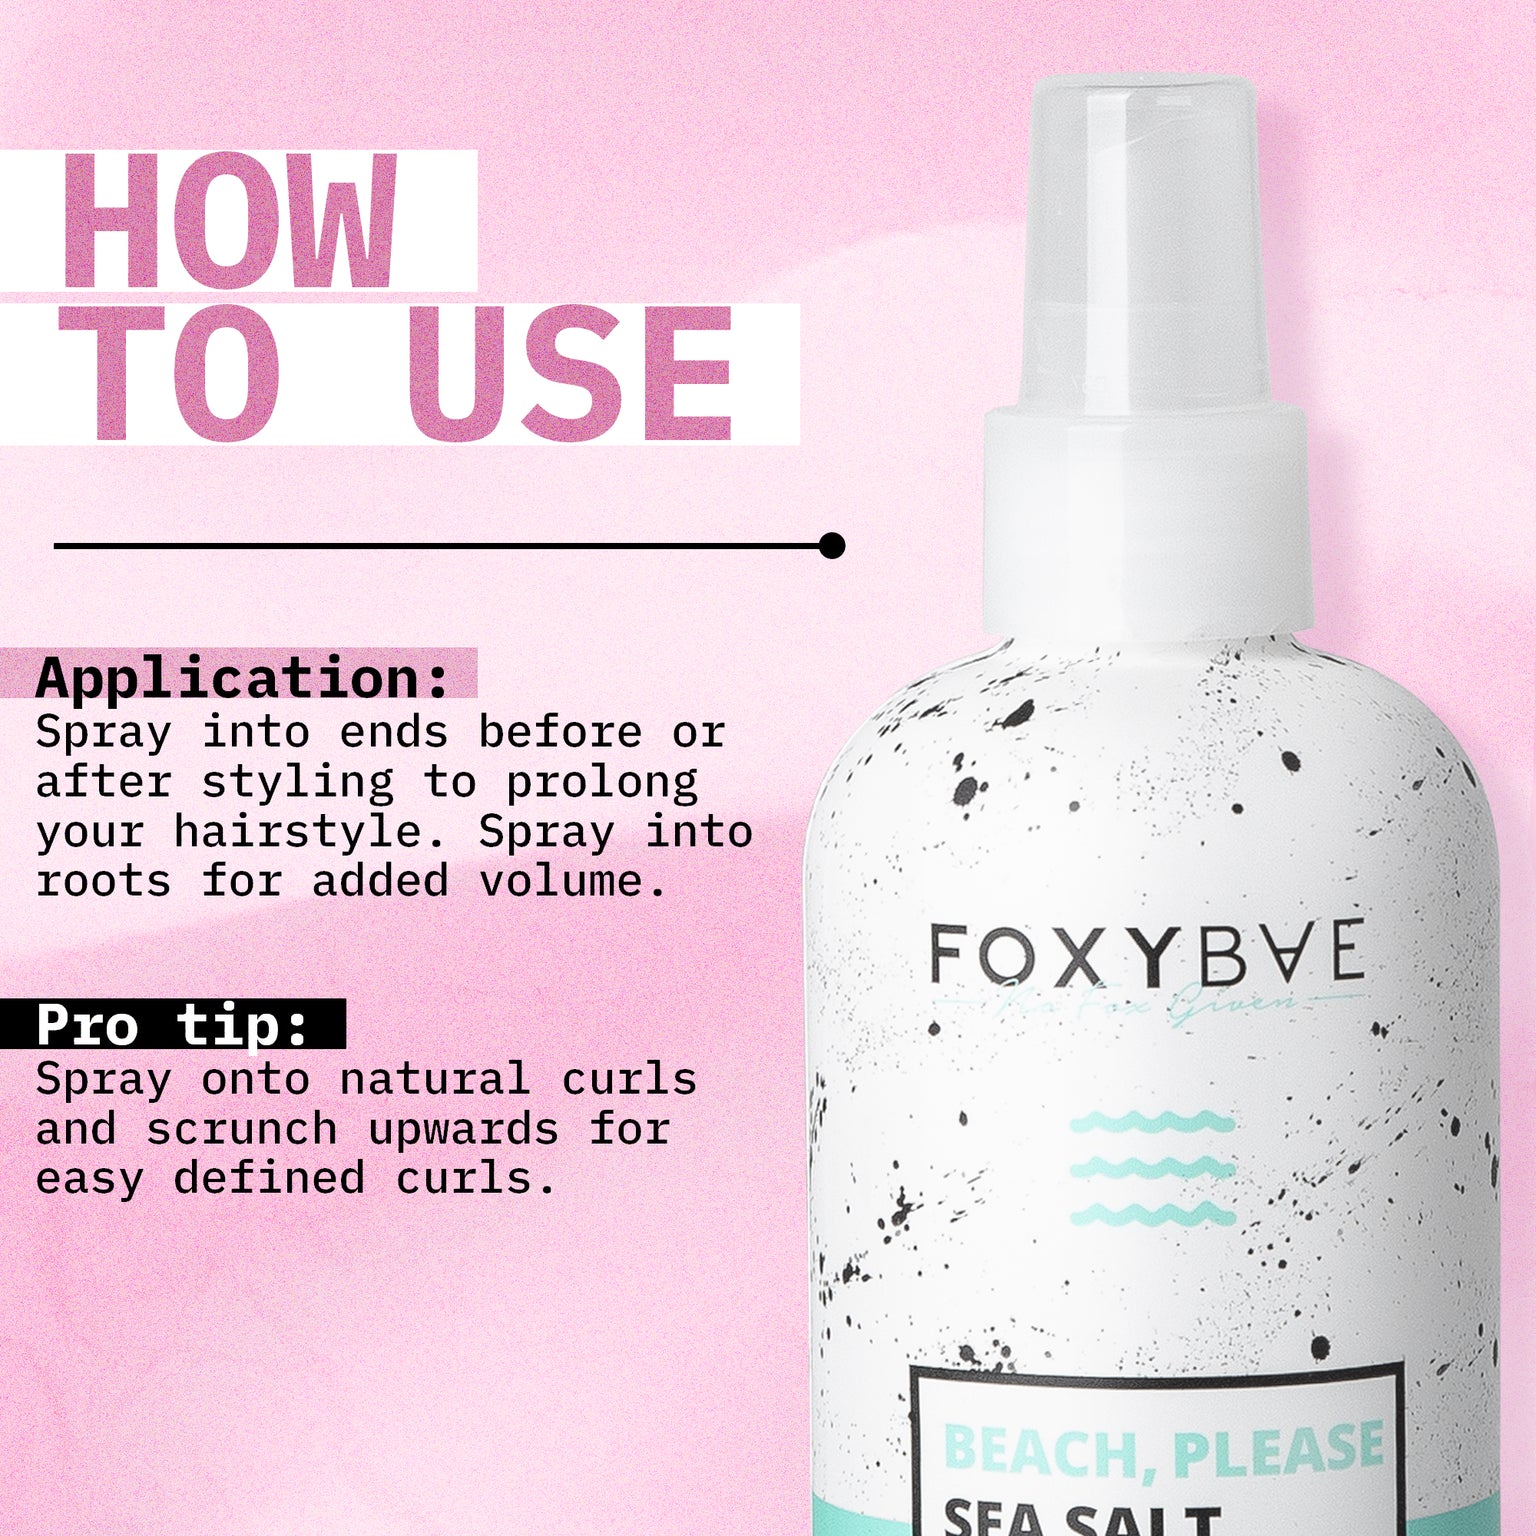 FoxyBae Volumizing Hair Spray - Big Tease Texture Spray for Hair